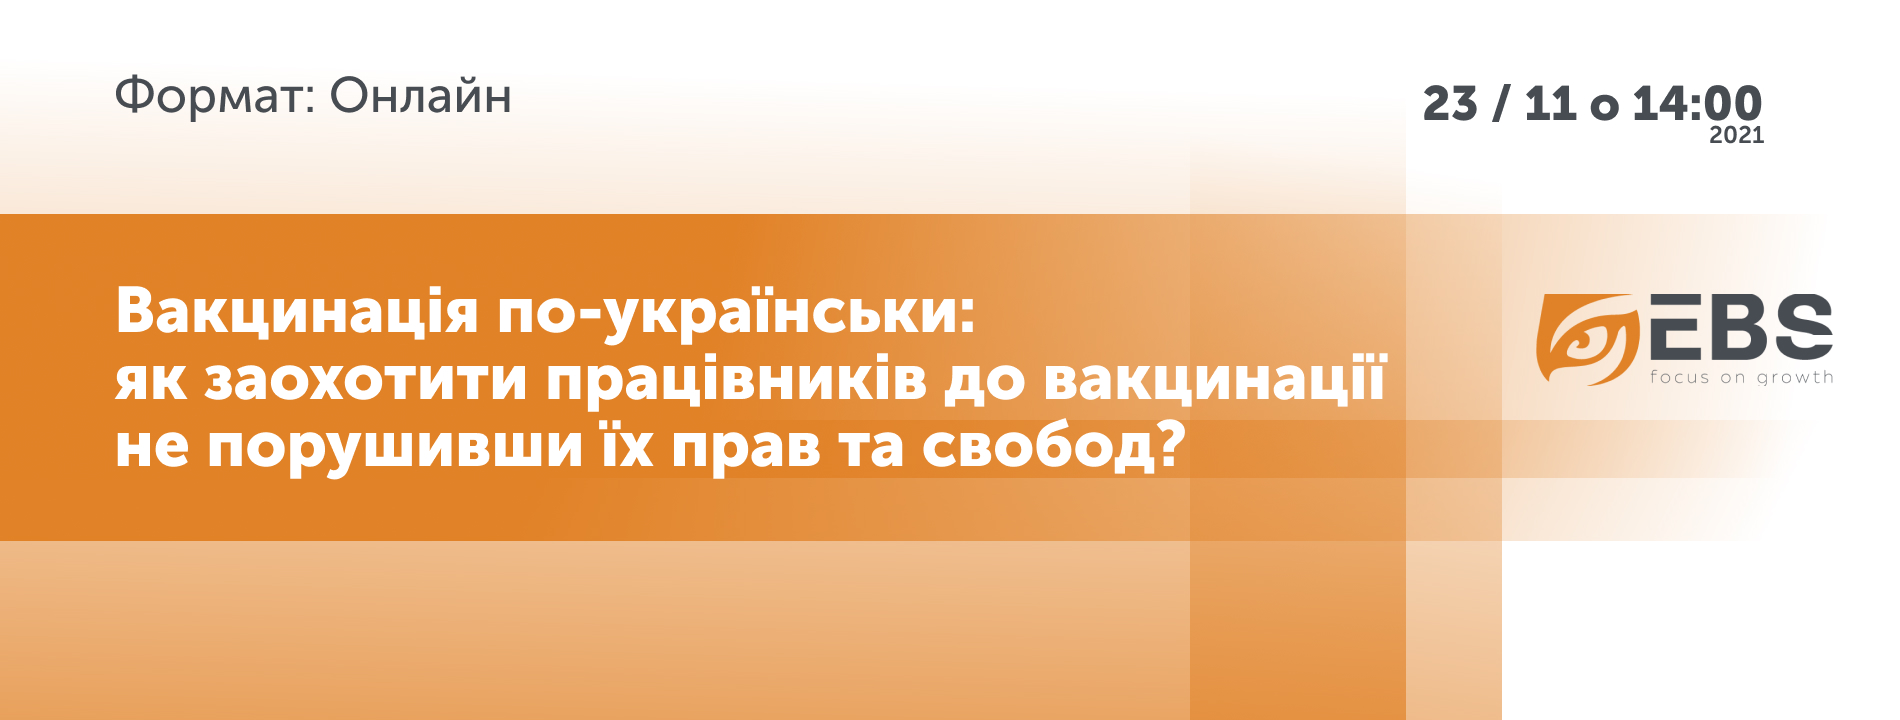 Онлайн-дискусія «Вакцинація по-українськи: як заохотити працівників до вакцинації не порушивши їх прав та свобод?»